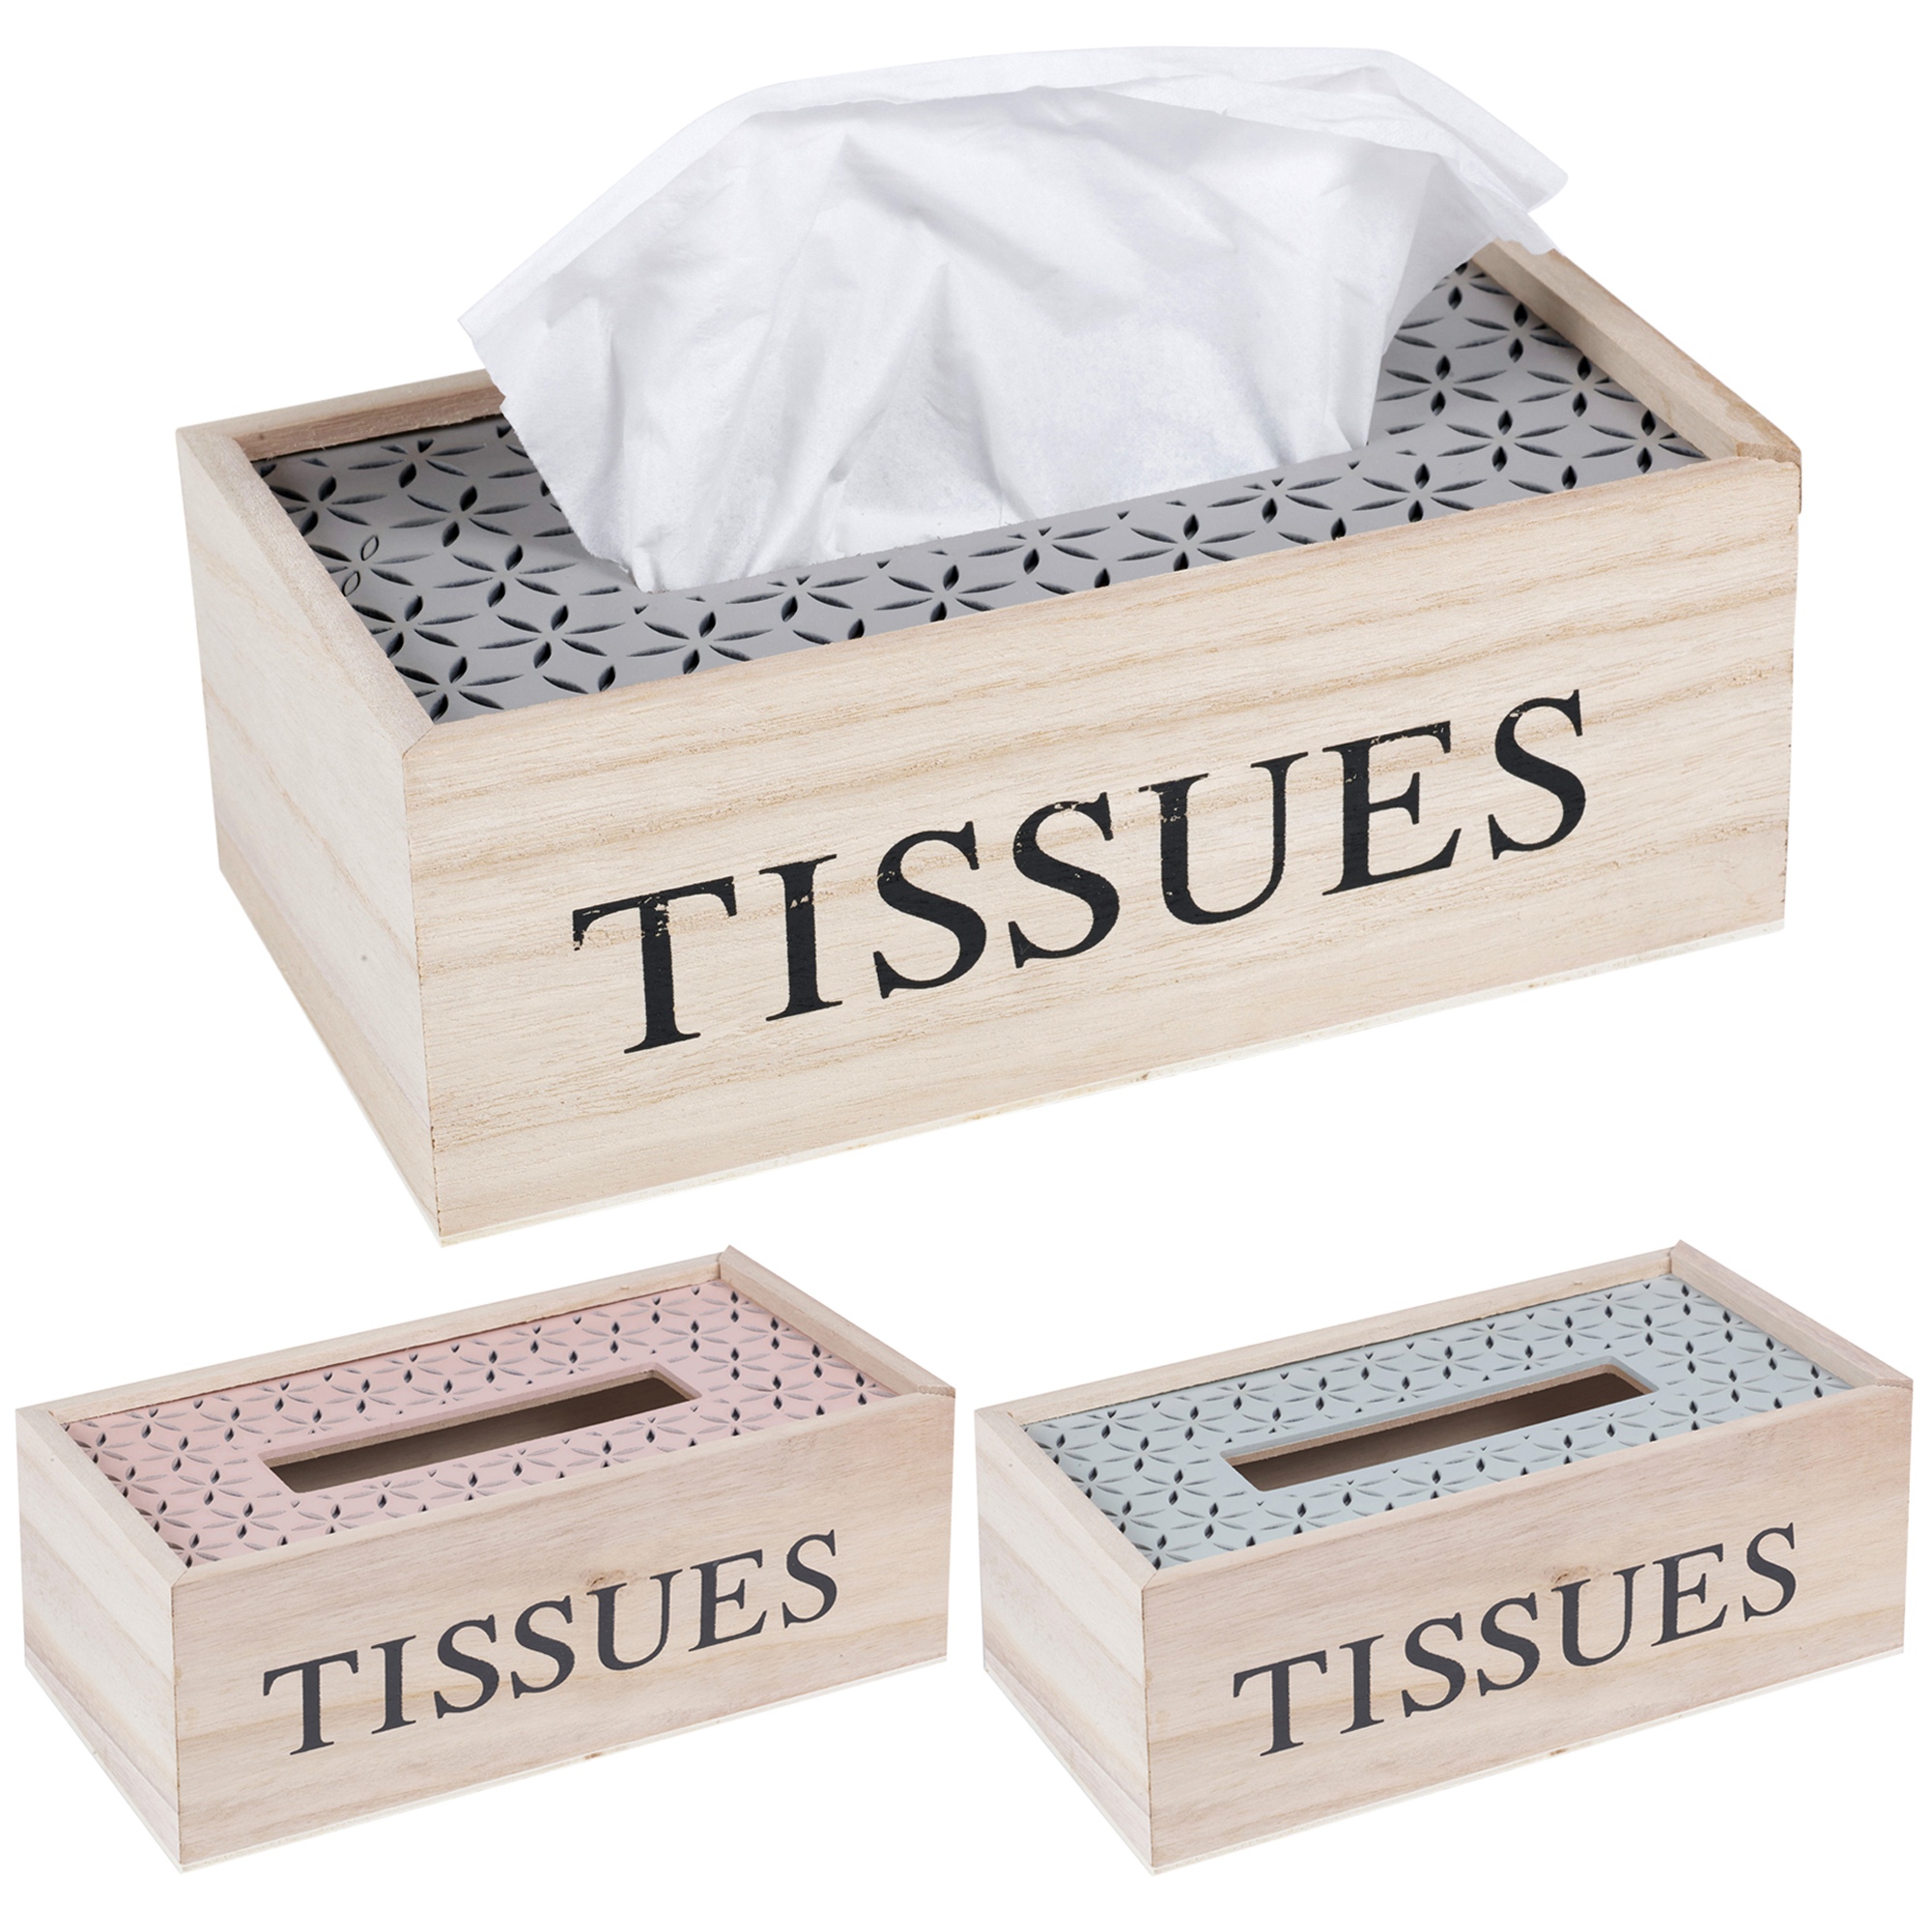 design tissue box cover